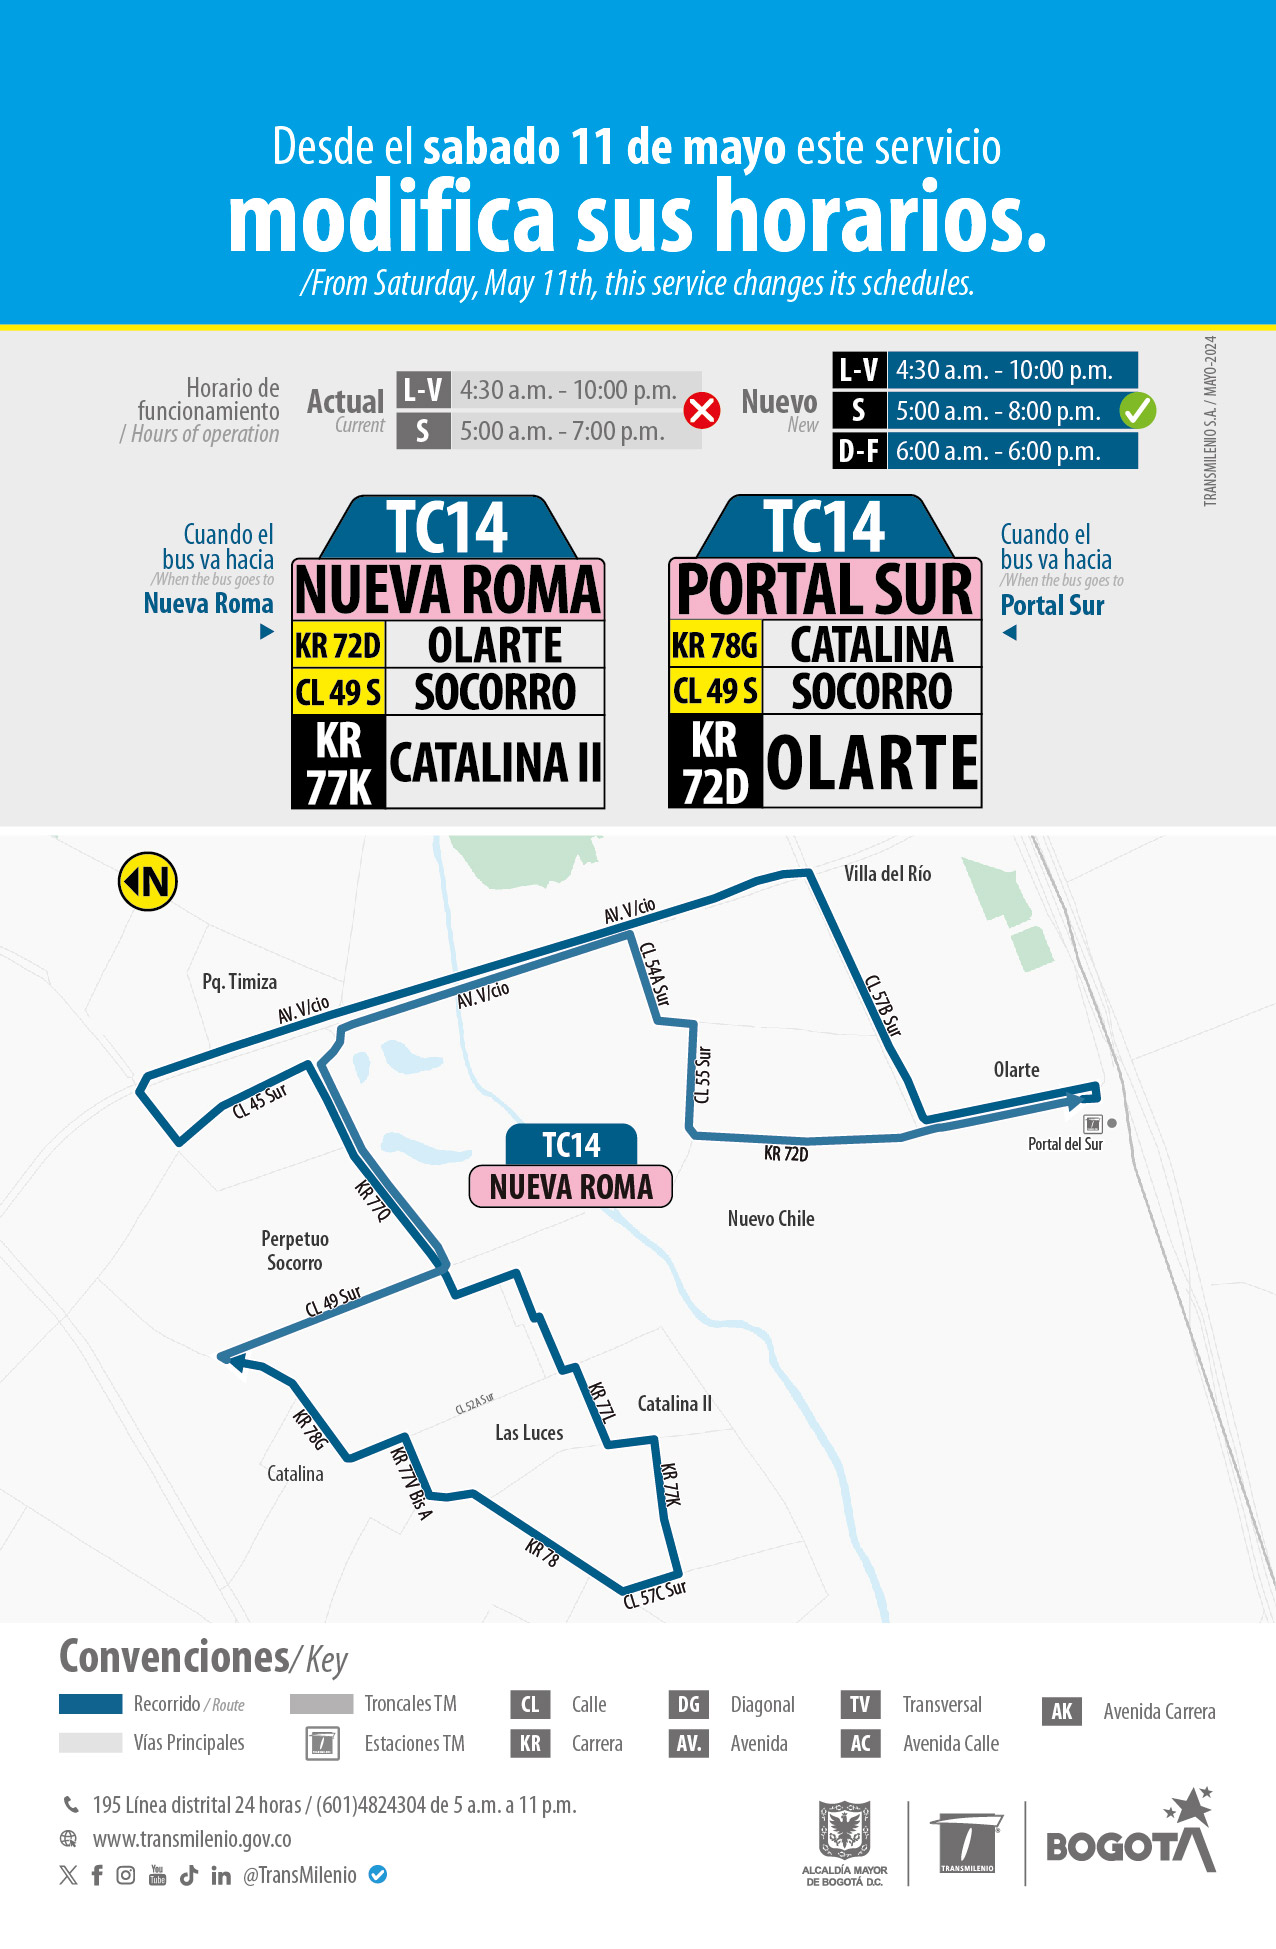 La ruta zonal TC14 Nueva Roma - Portal Sur modifica su horario de operación